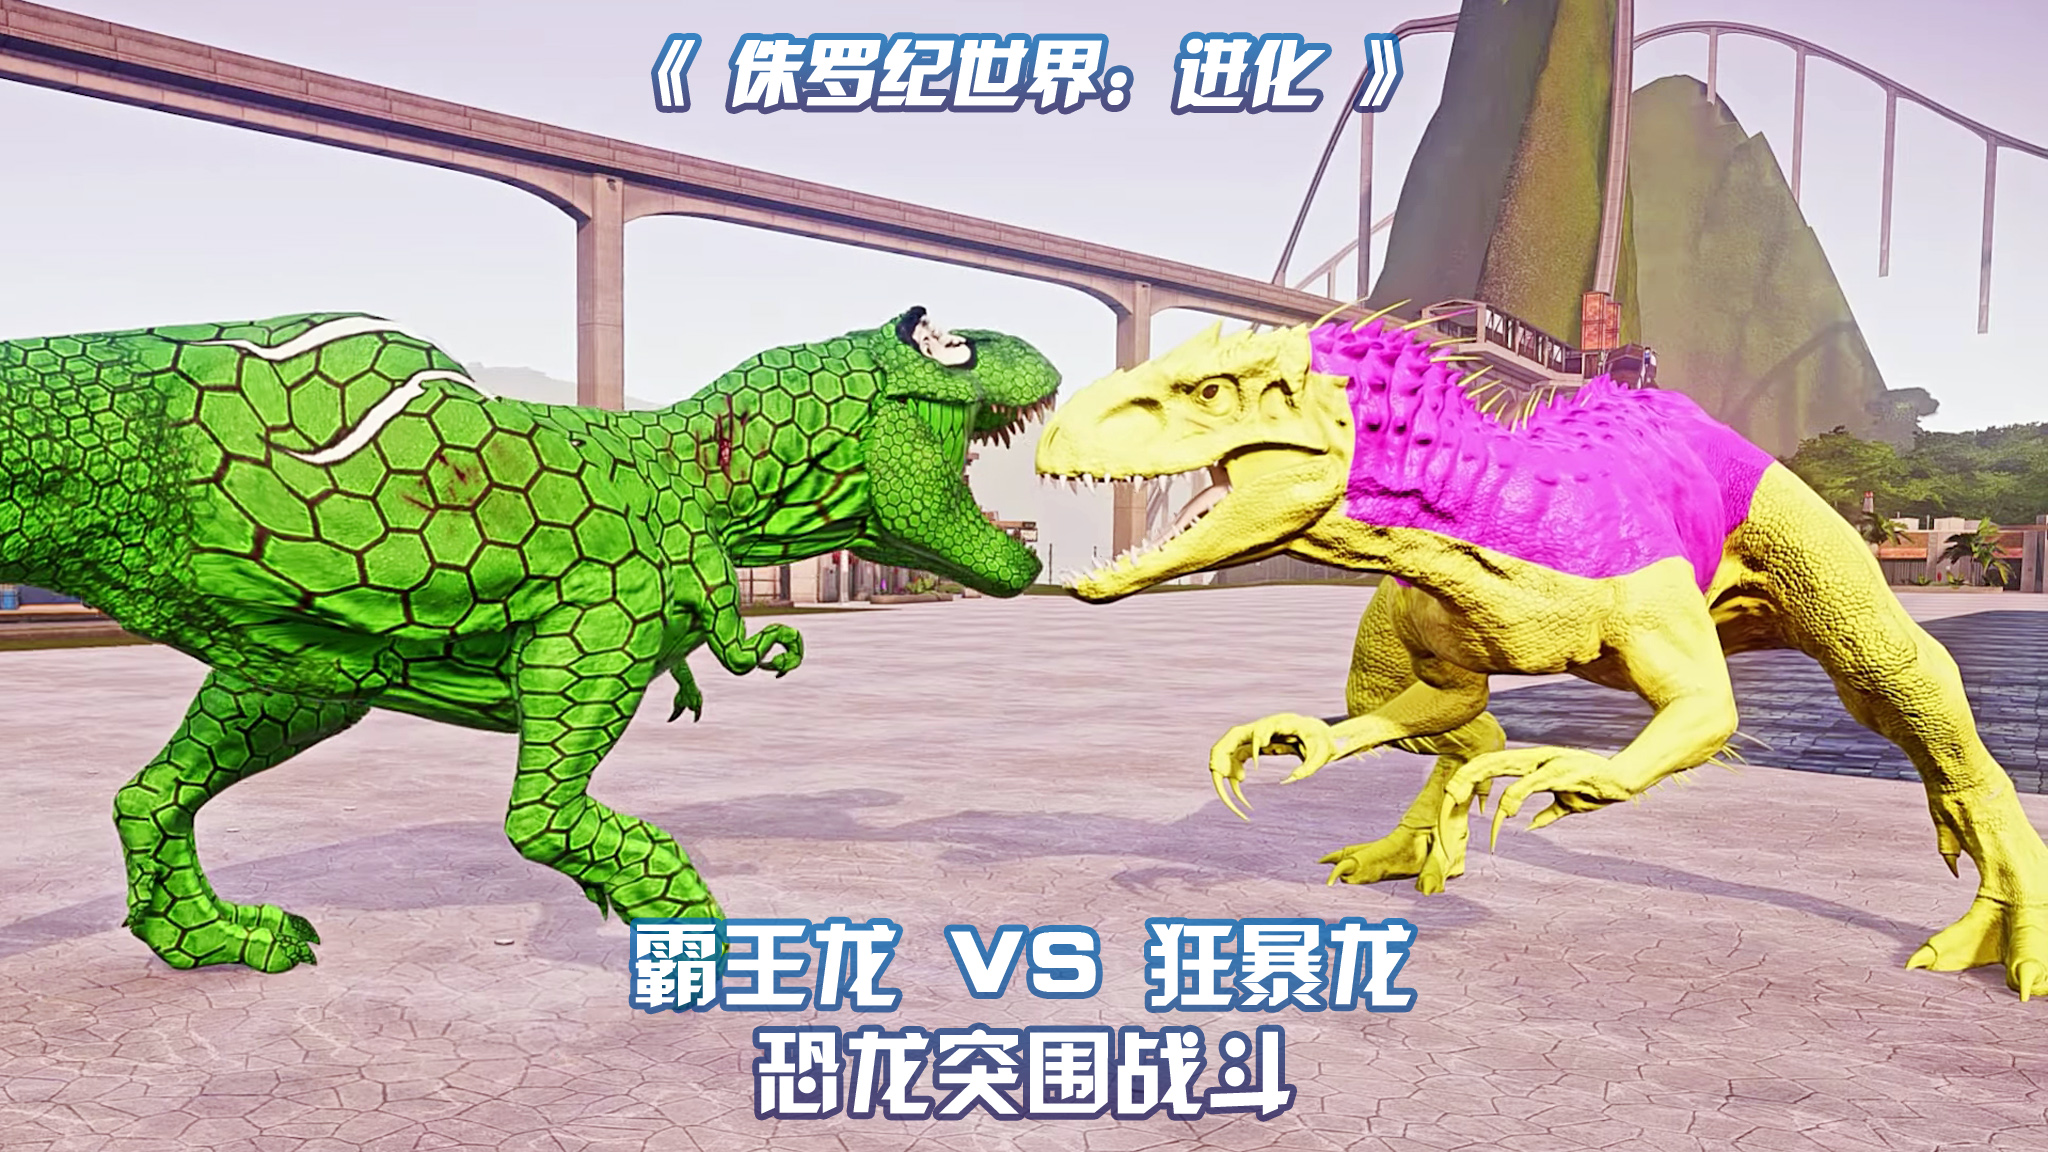 霸王龙 VS 狂暴龙 ~ 侏罗纪世界进化